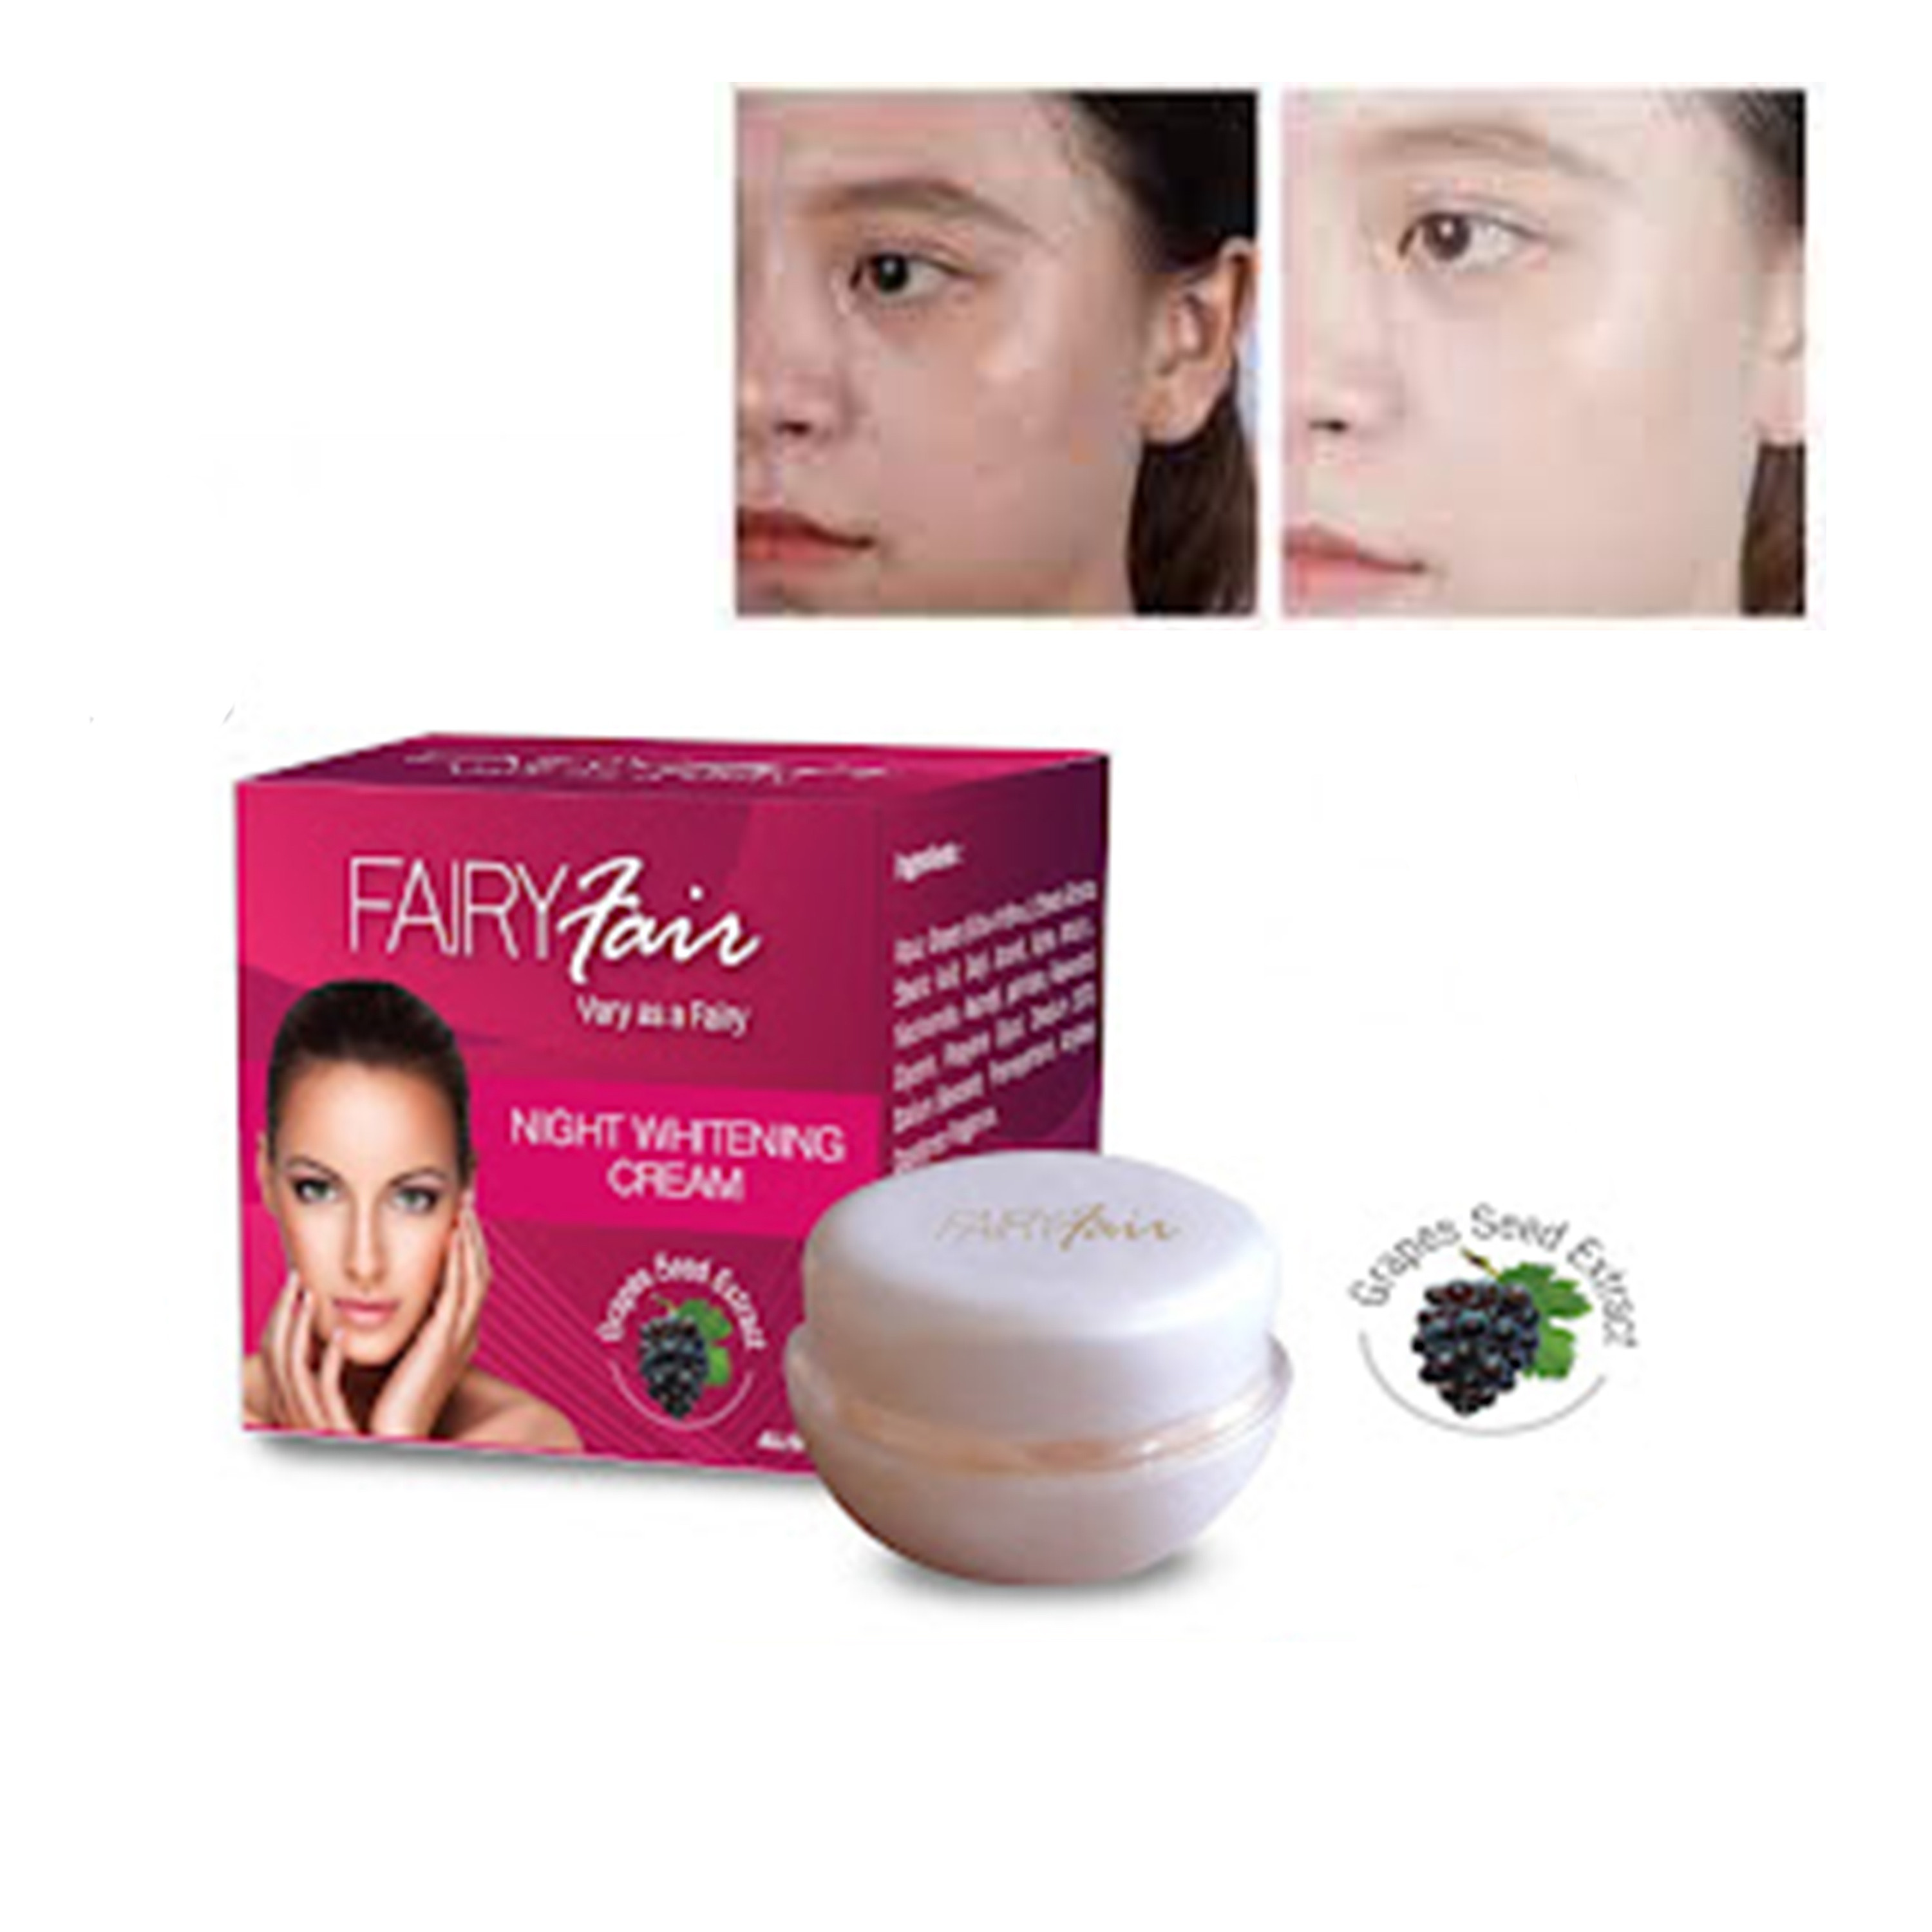 Fairy Fair Night Cream